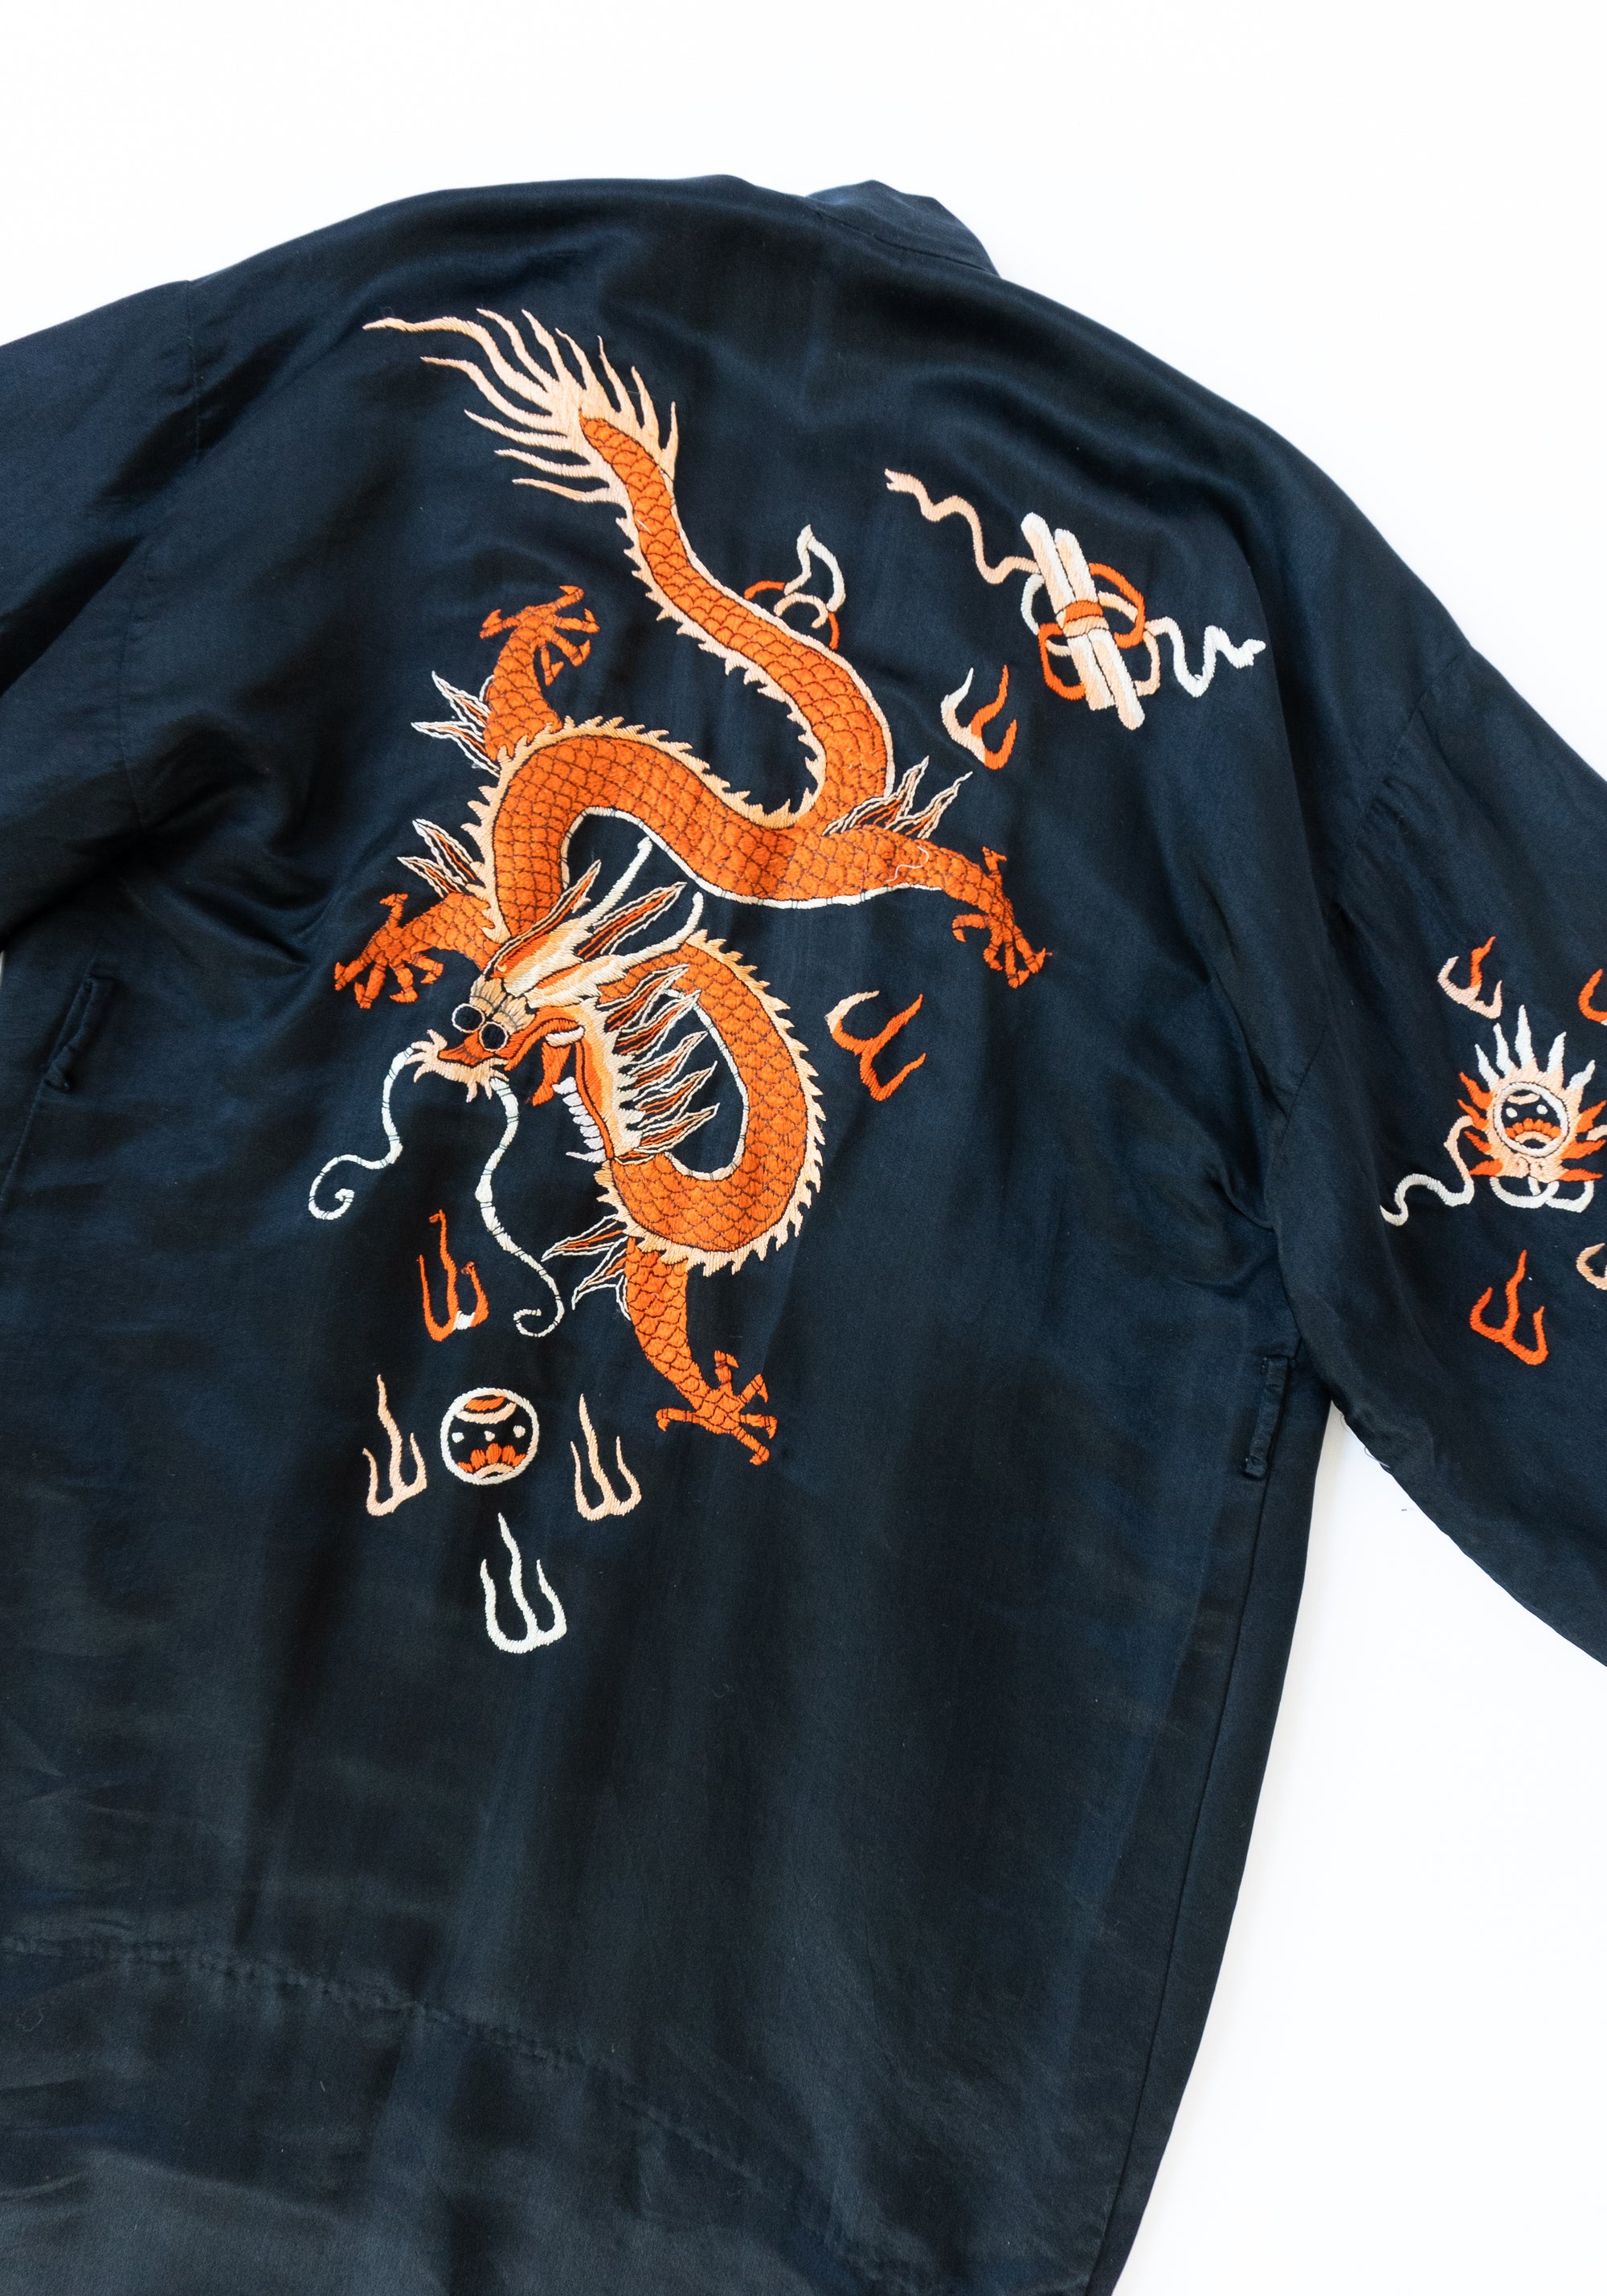 Vintage Dragon Kimono